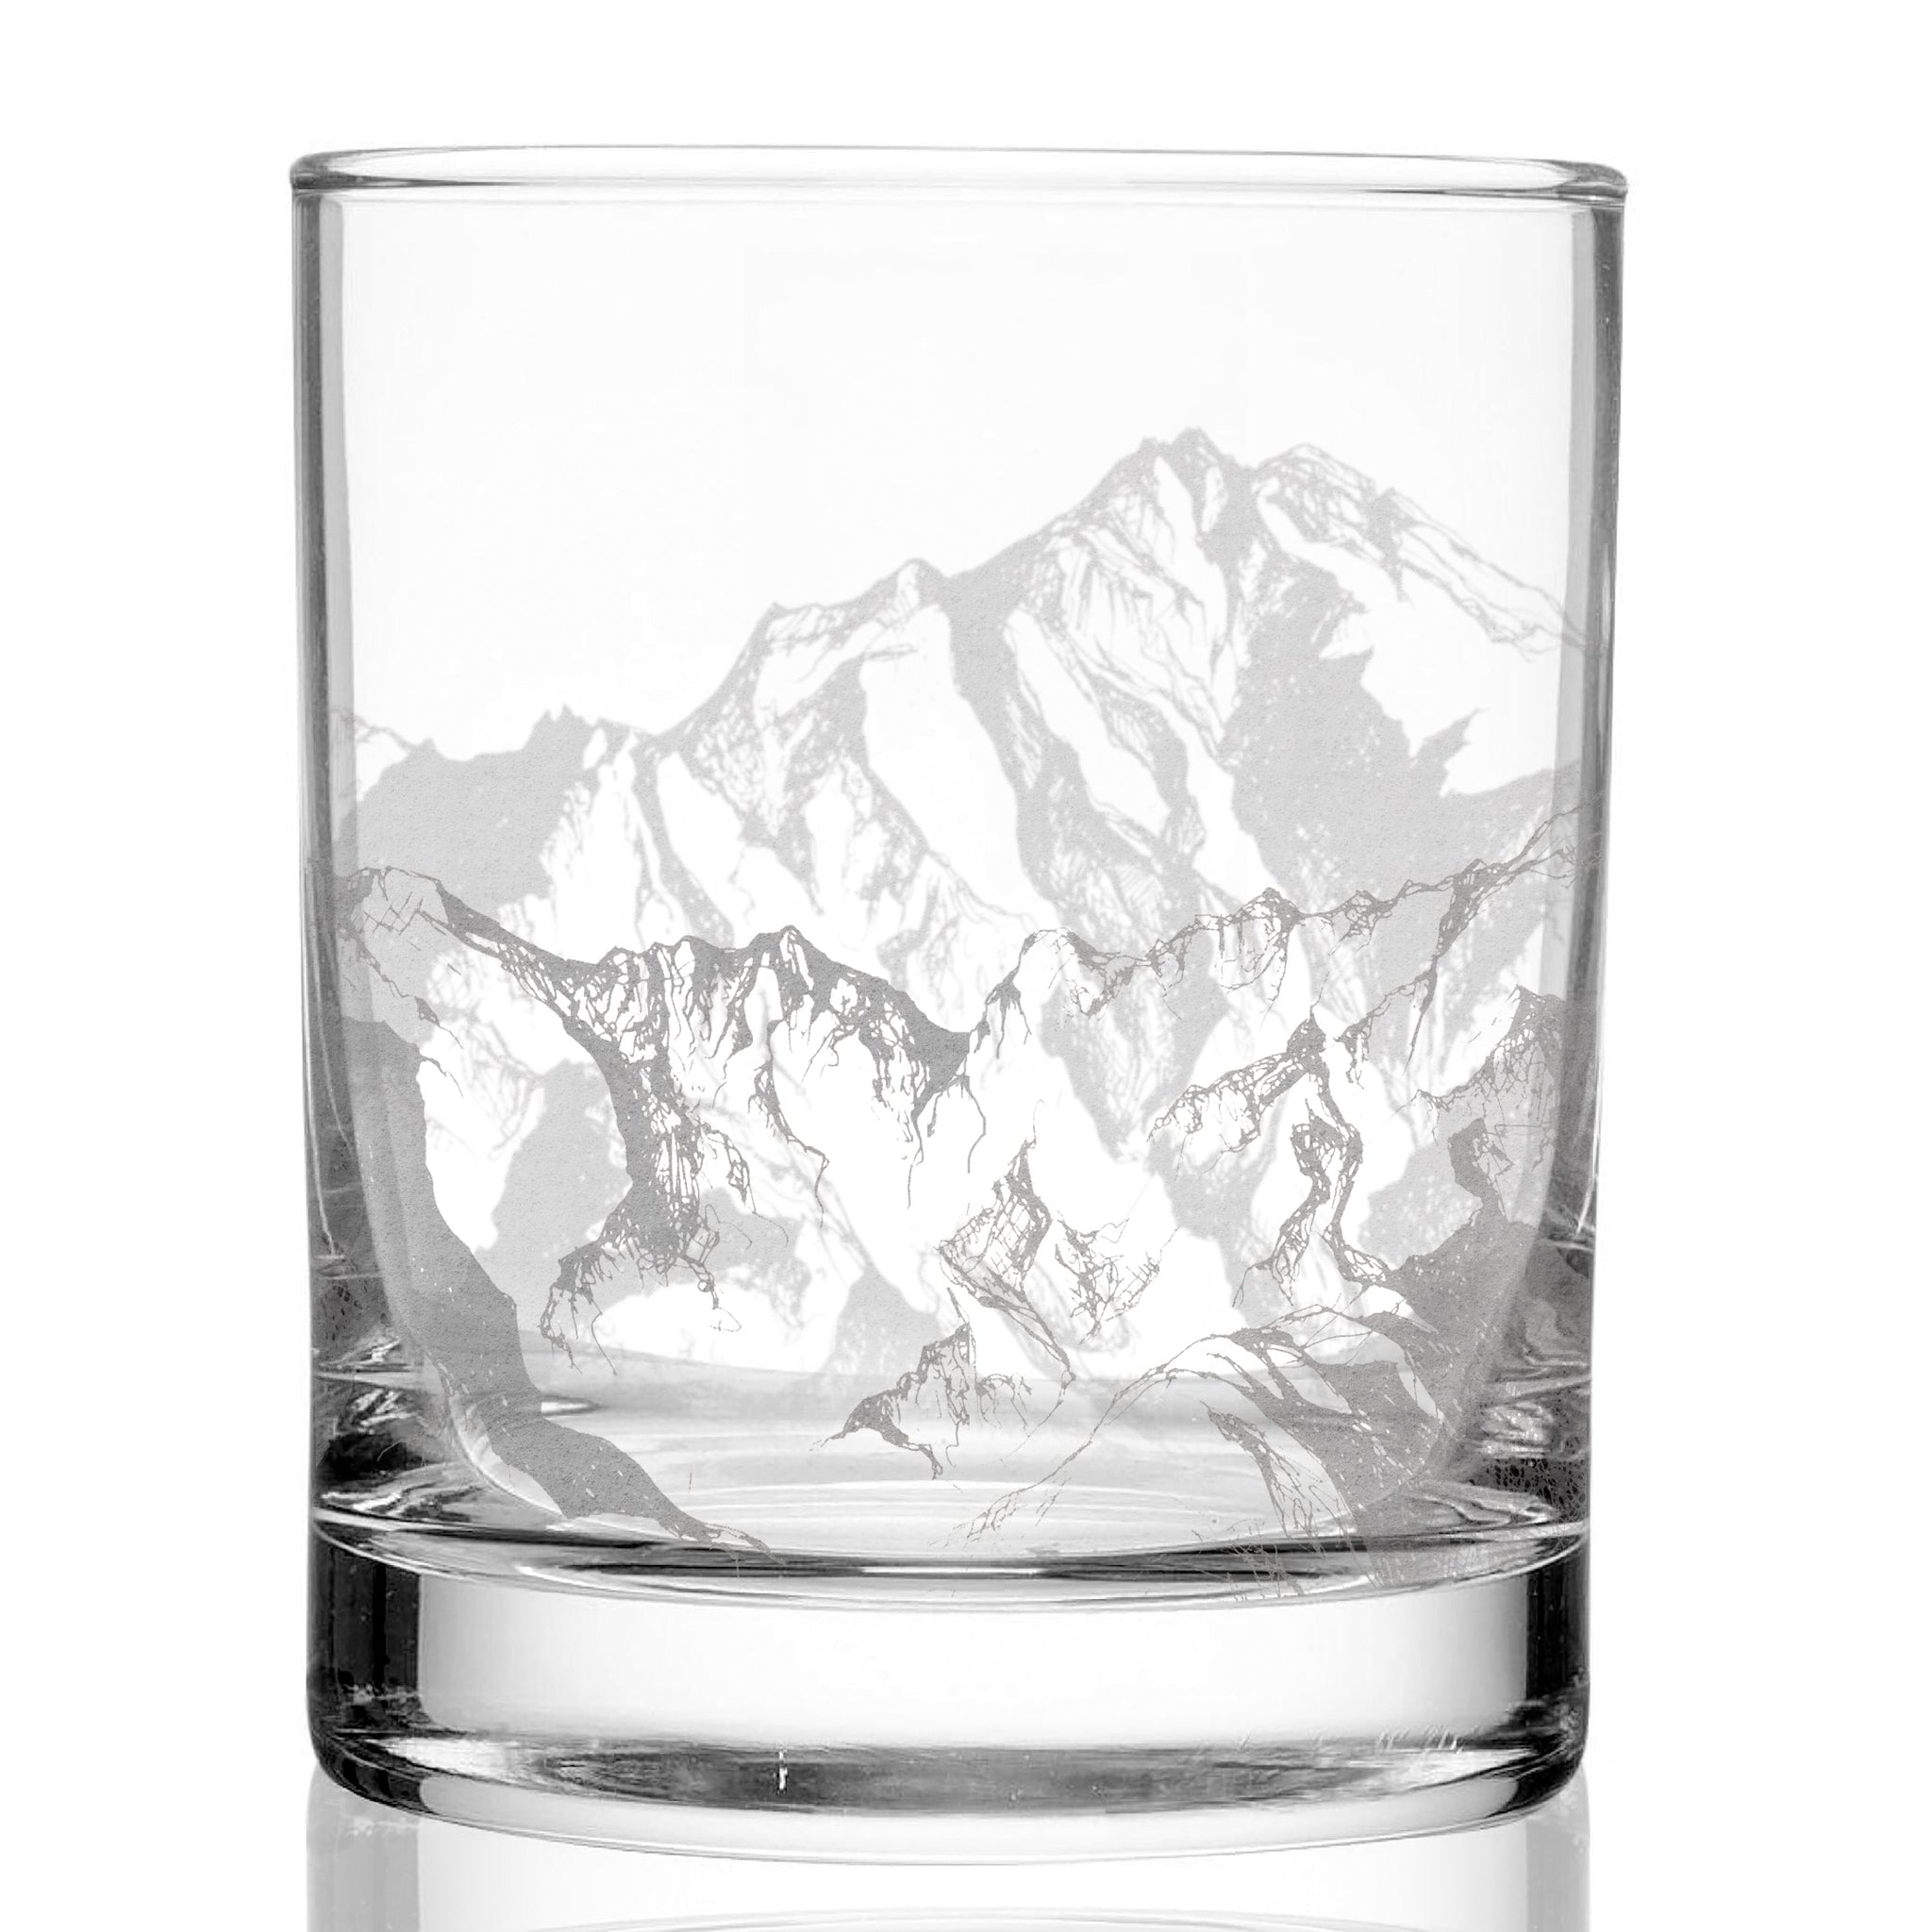 MOUNTAINS Whiskey Glass